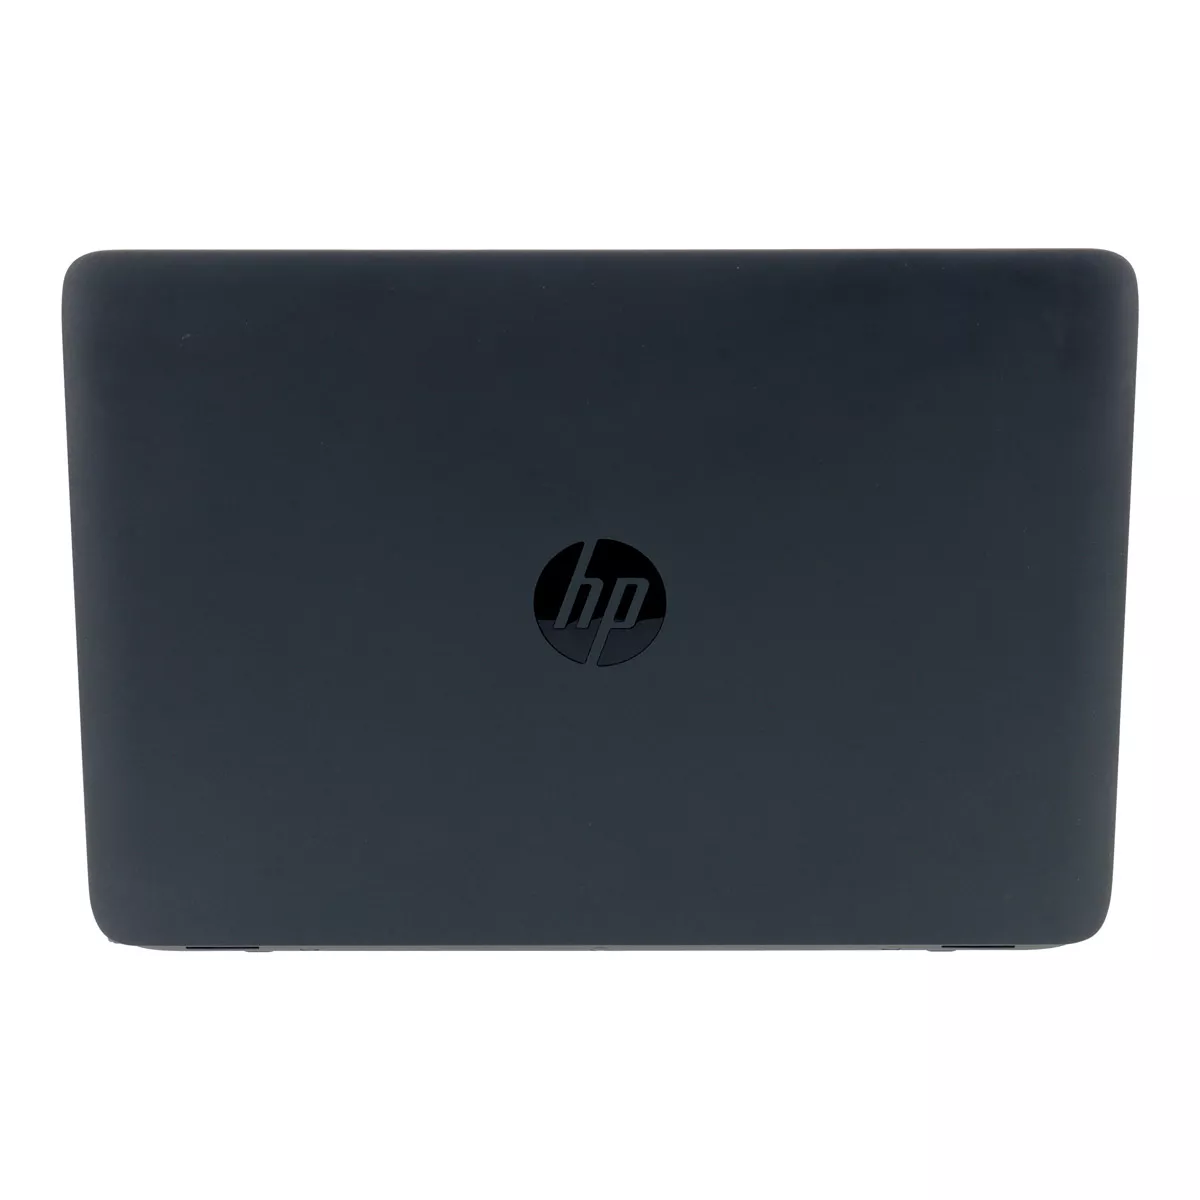 HP EliteBook 840 G1 Core i5 4310U 2,0 GHz Webcam A+